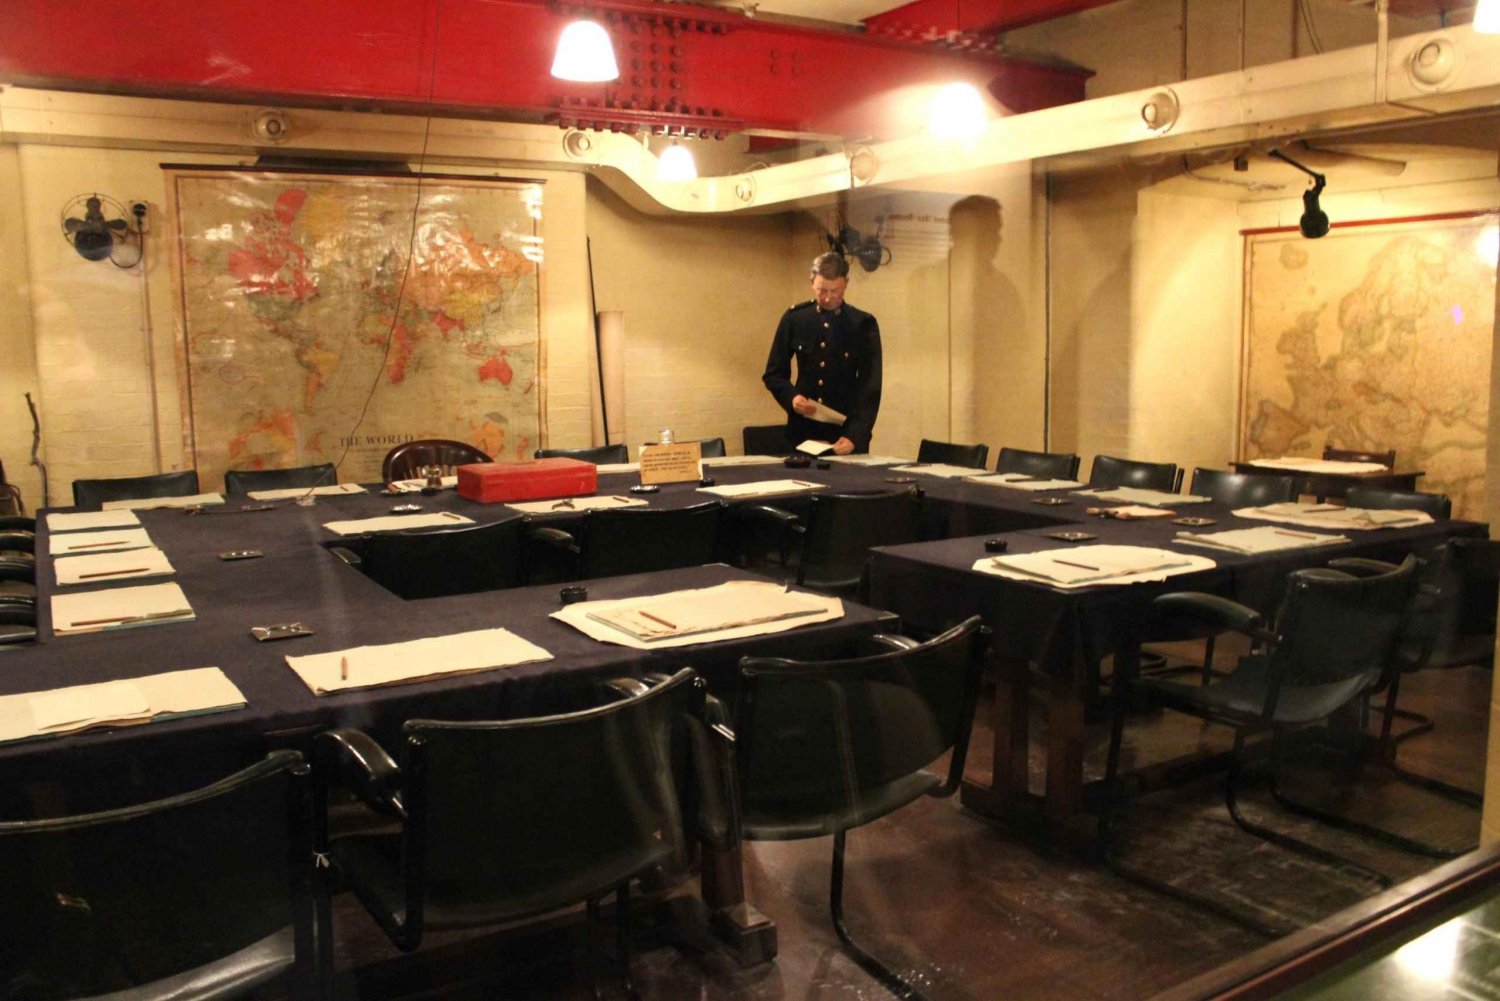 Londyn: 30 najważniejszych zabytków i Churchill War Rooms Tour